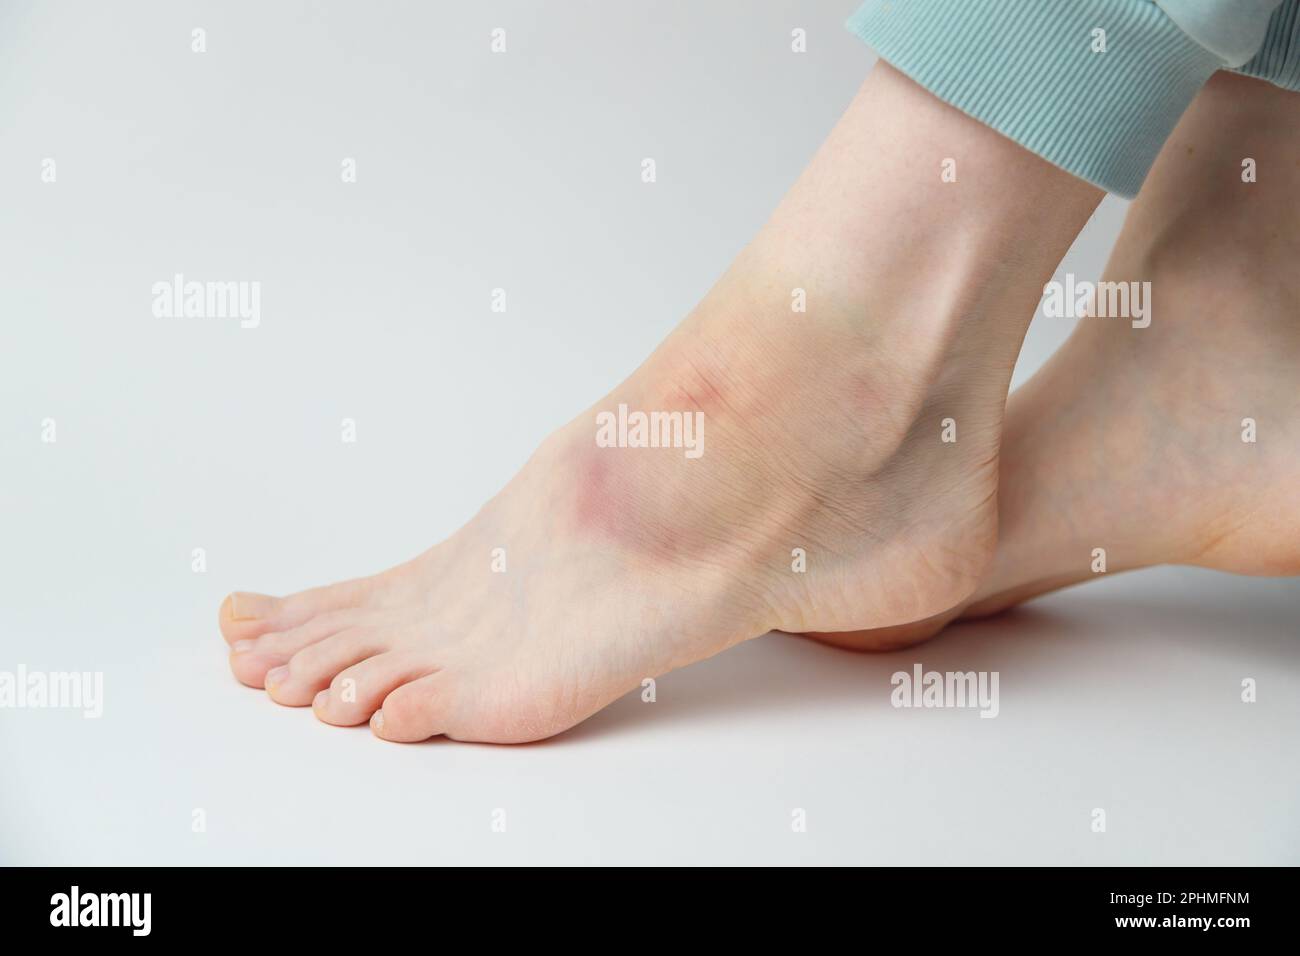 Sprained ankle immagini e fotografie stock ad alta risoluzione - Alamy